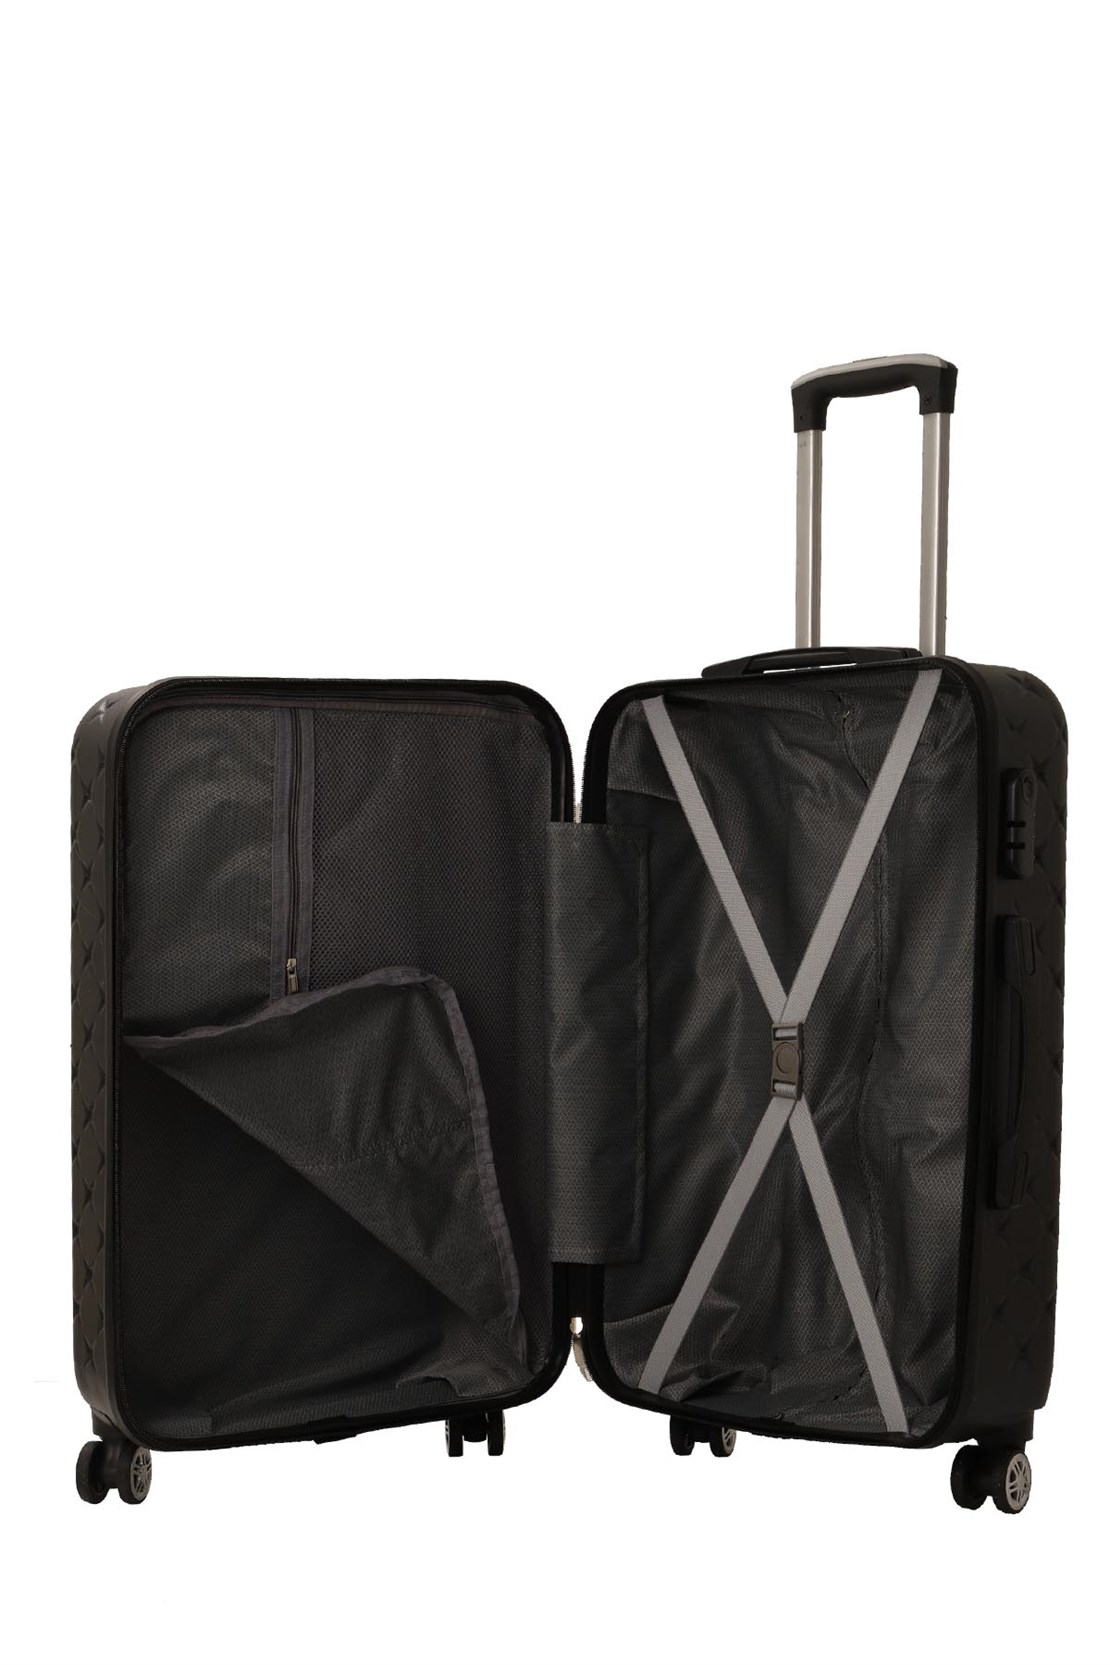 Малый чемодан для ручной клади из АБС Поликарбонат MCS v361 S Black - 2